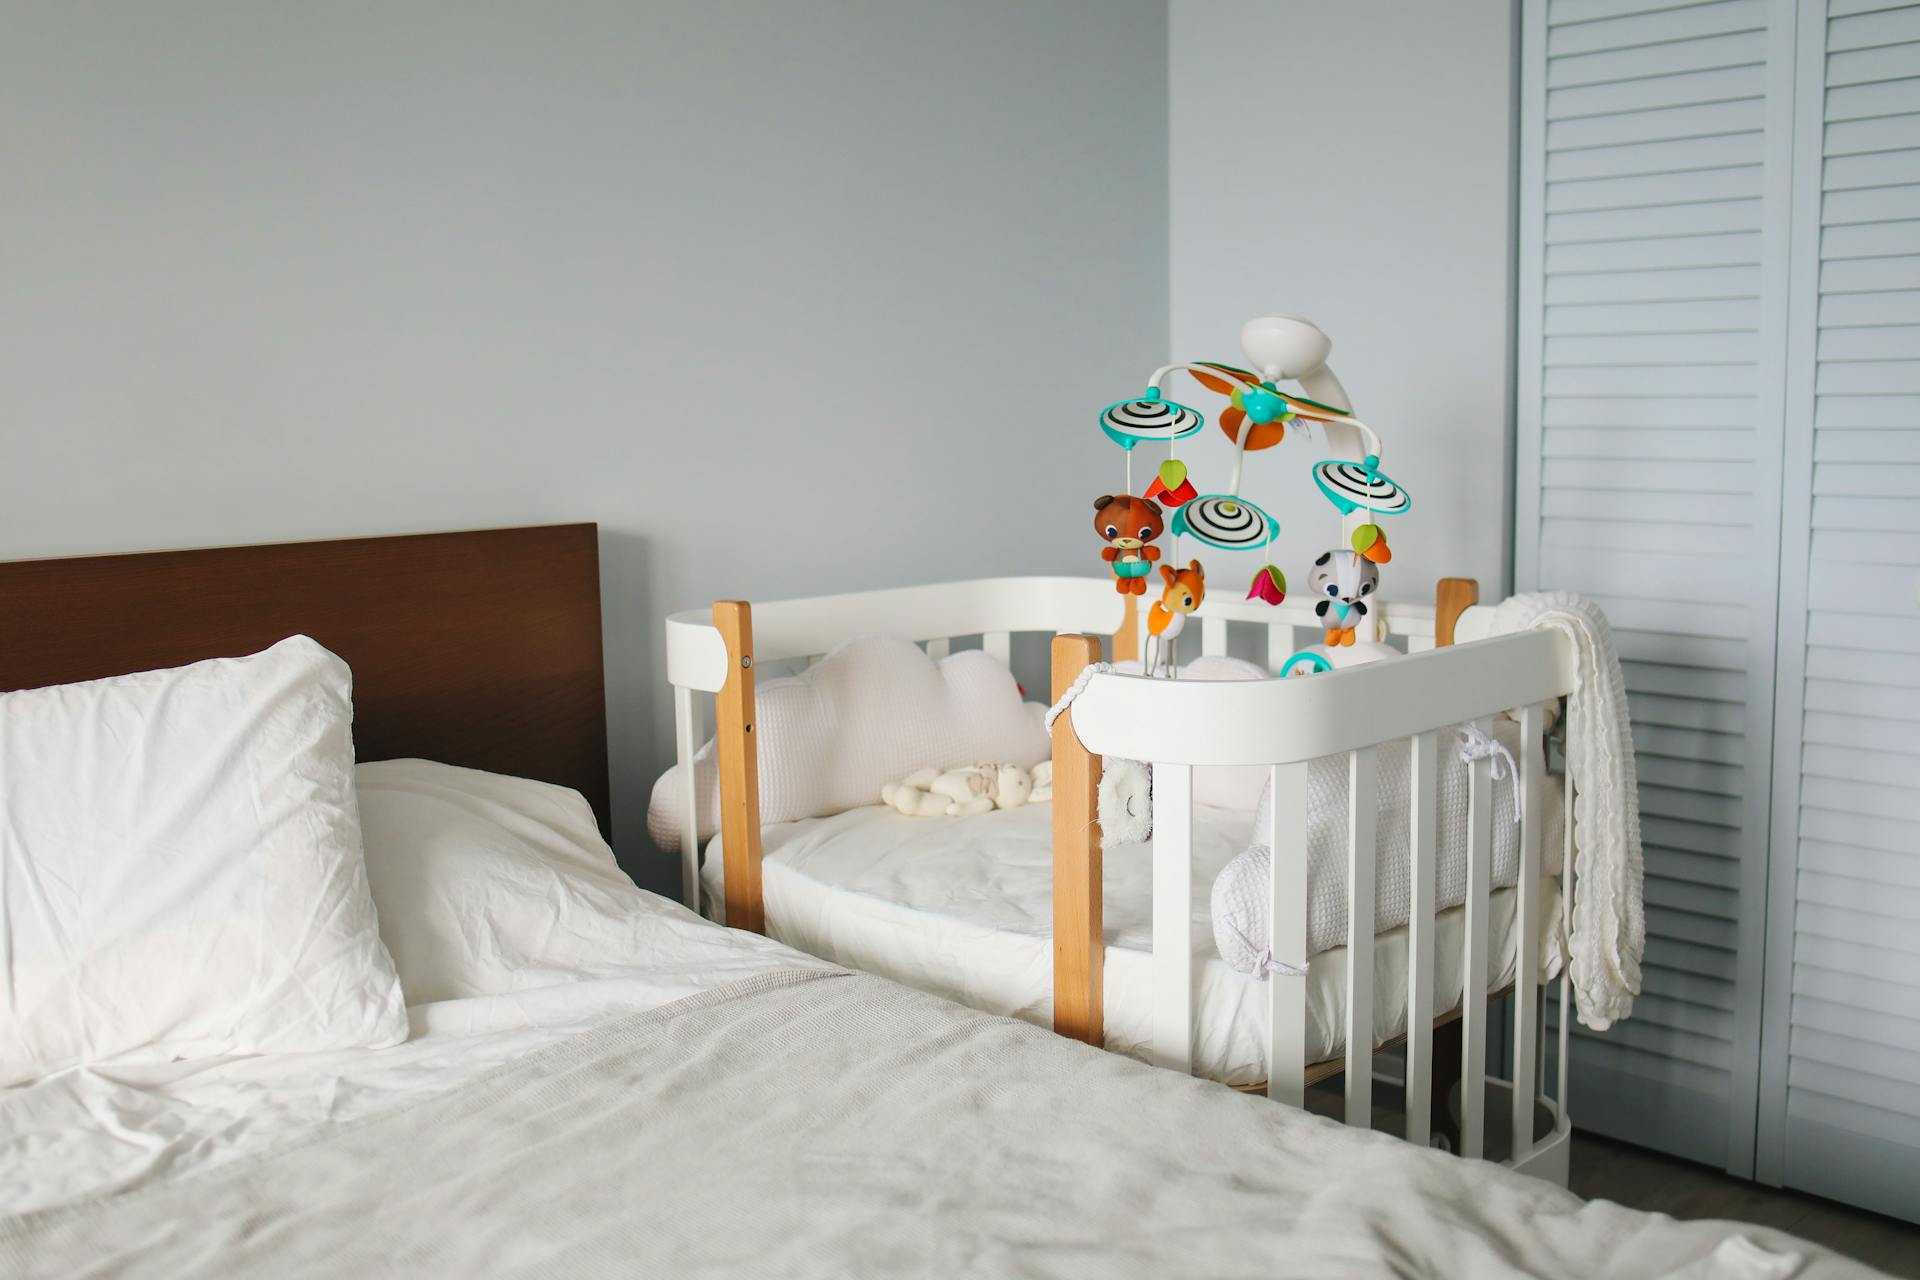 Kinderbett neben dem Bett | Quelle: Pexels